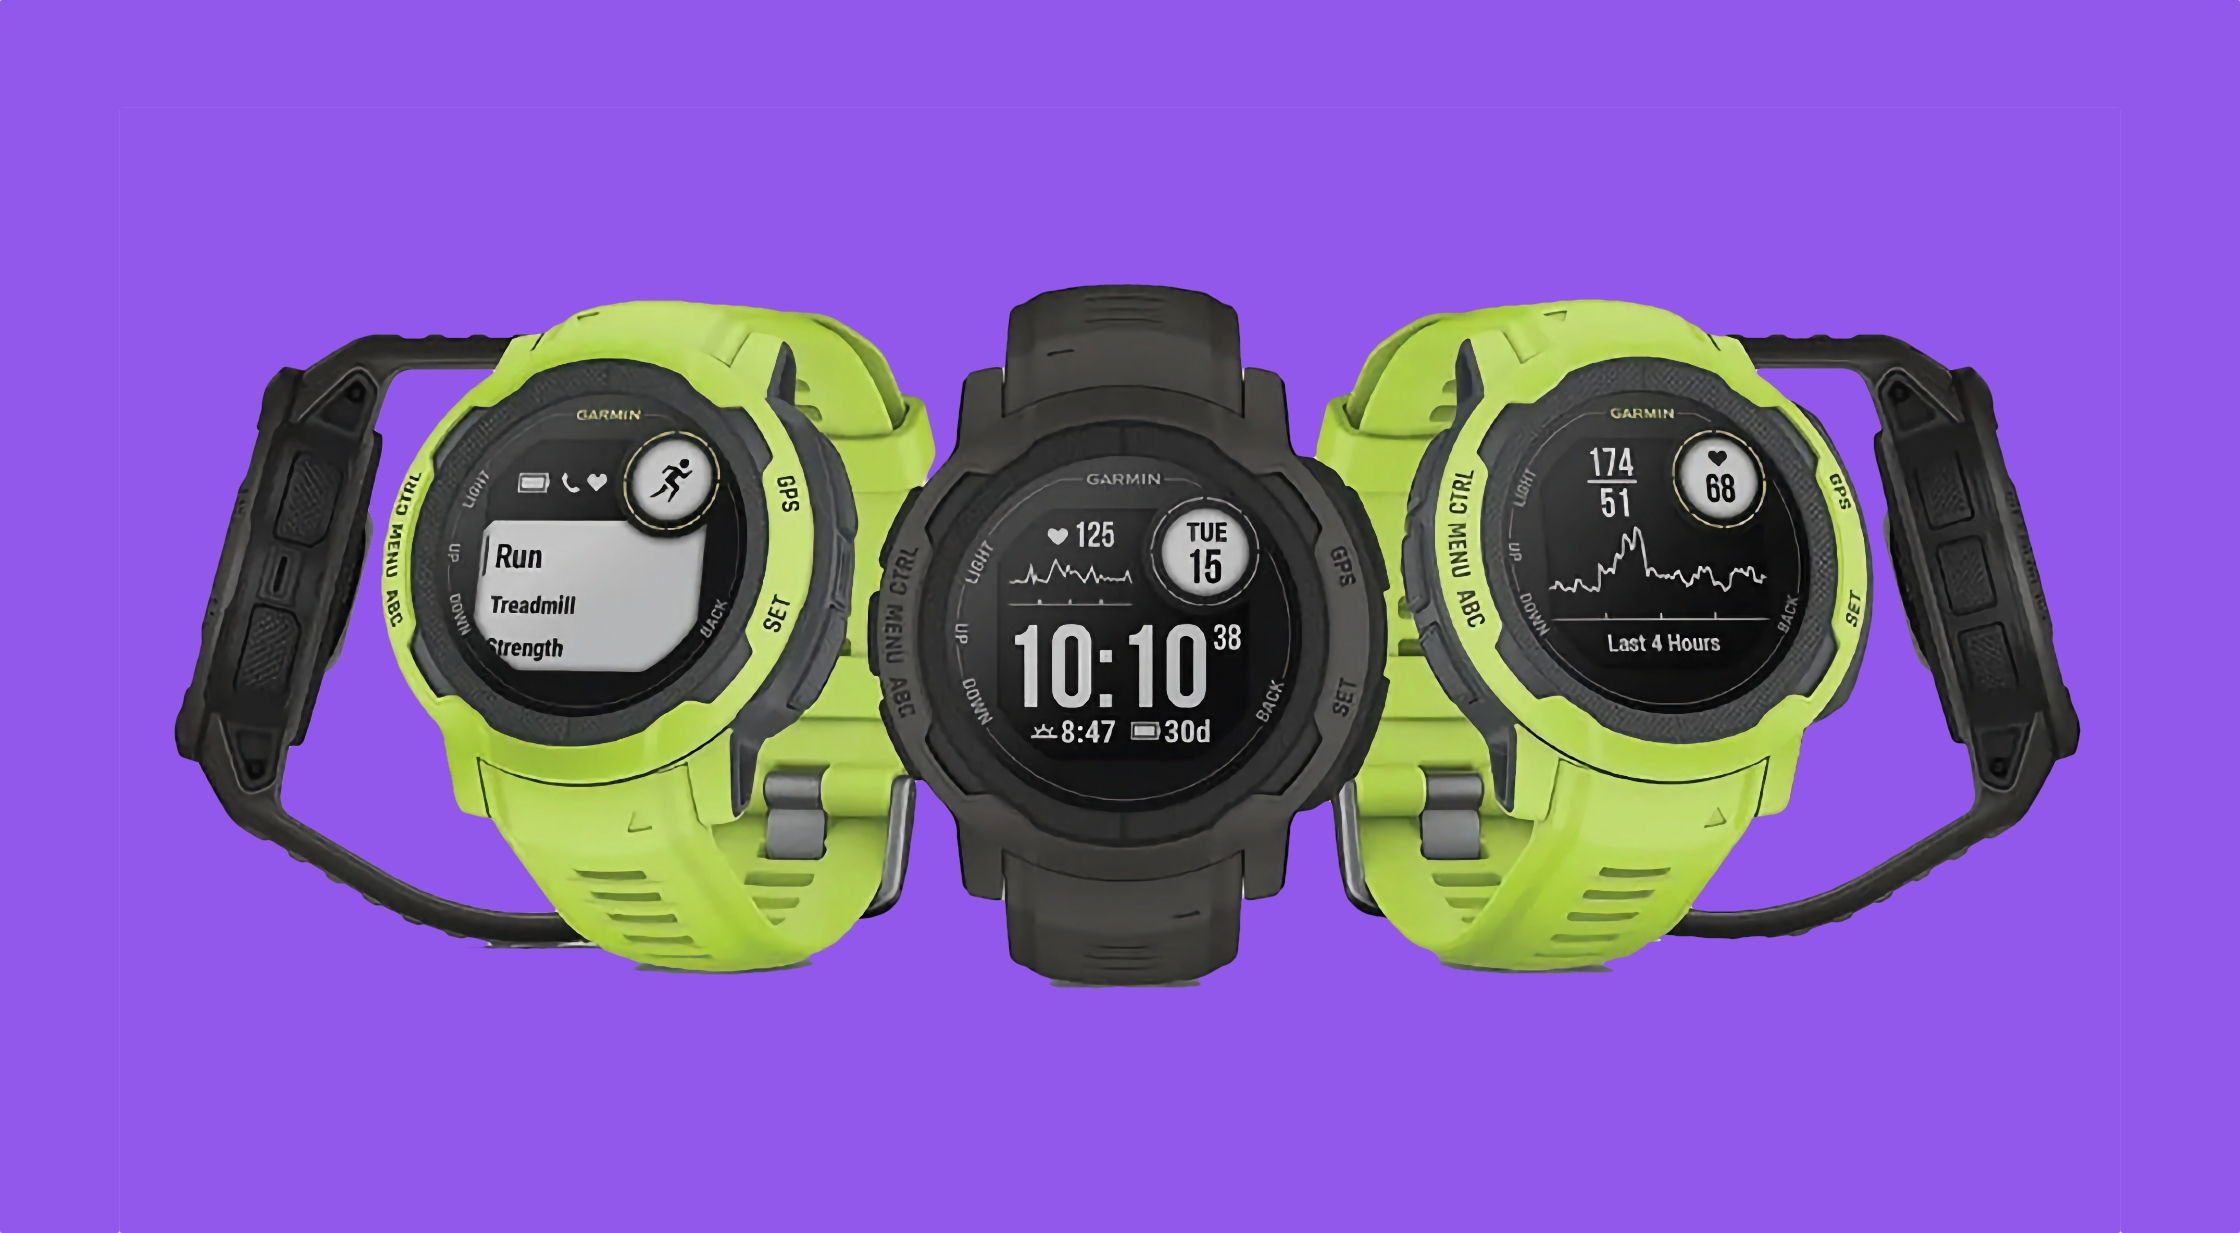 El smartwatch deportivo de Garmin está de oferta en Amazon con descuentos de hasta 192 dólares